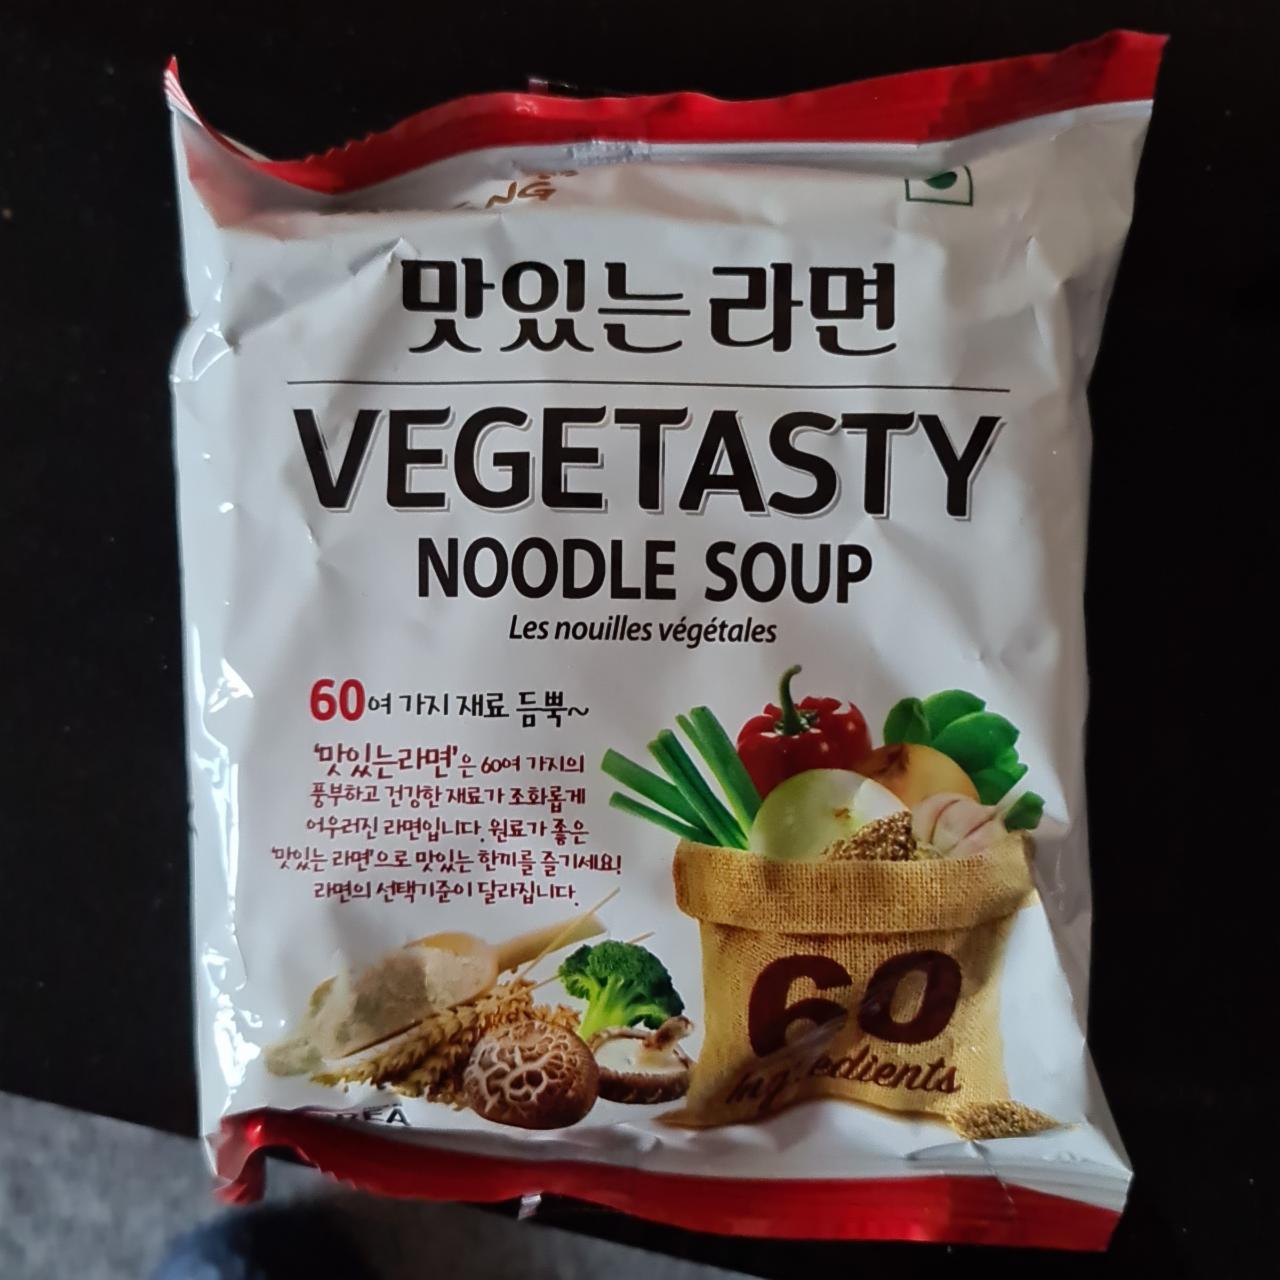 Фото - рамен овощной vegetasty noodle soup Samyang